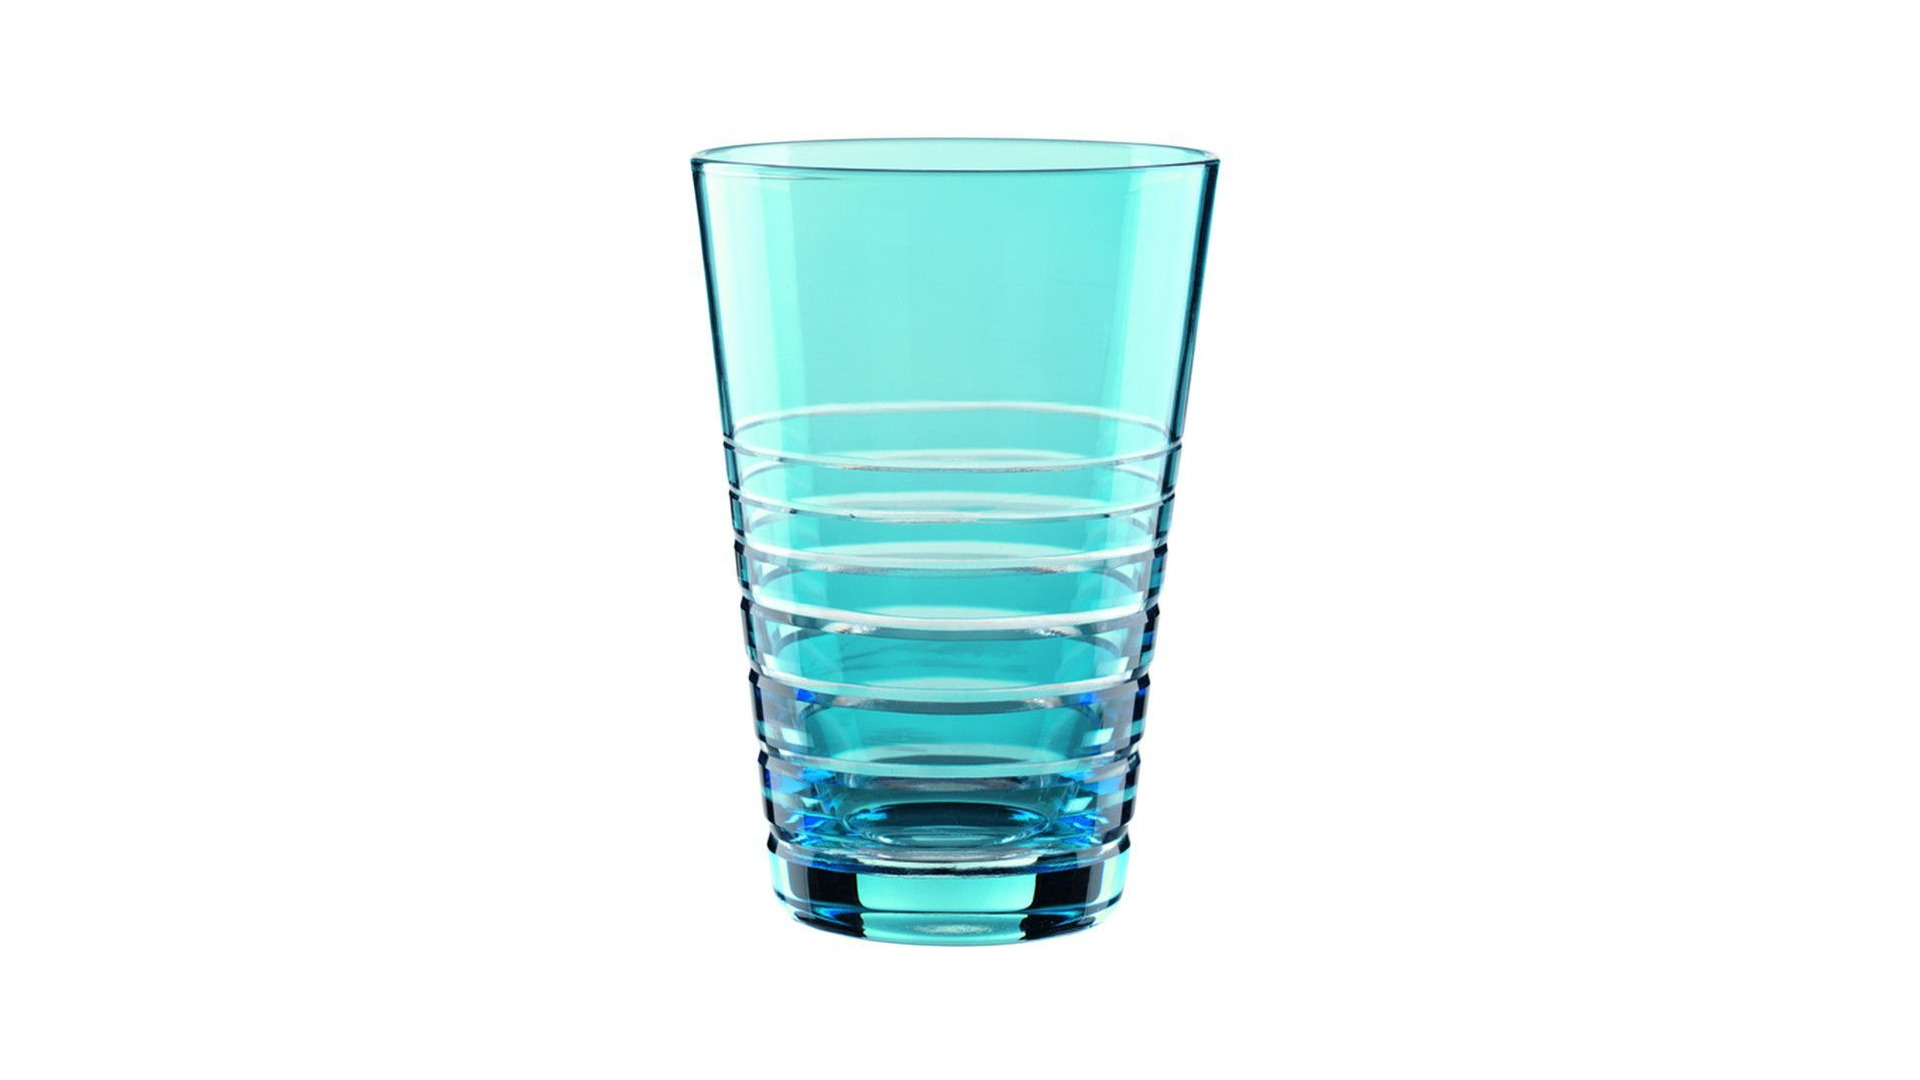 Набор стаканов для воды Nachtmann Rondo Aqua 450 мл, 2 шт, хрусталь